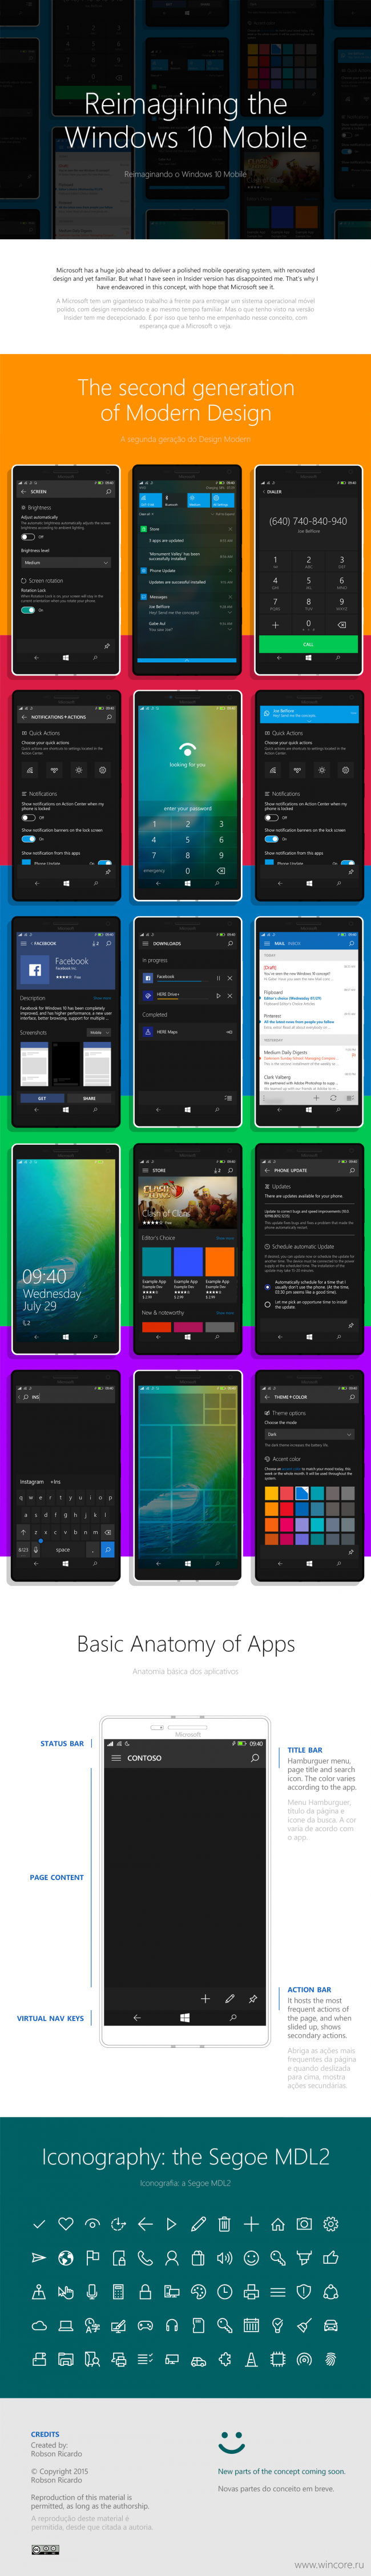 Переосмысление интерфейса Windows 10 Mobile от бразильского дизайнера